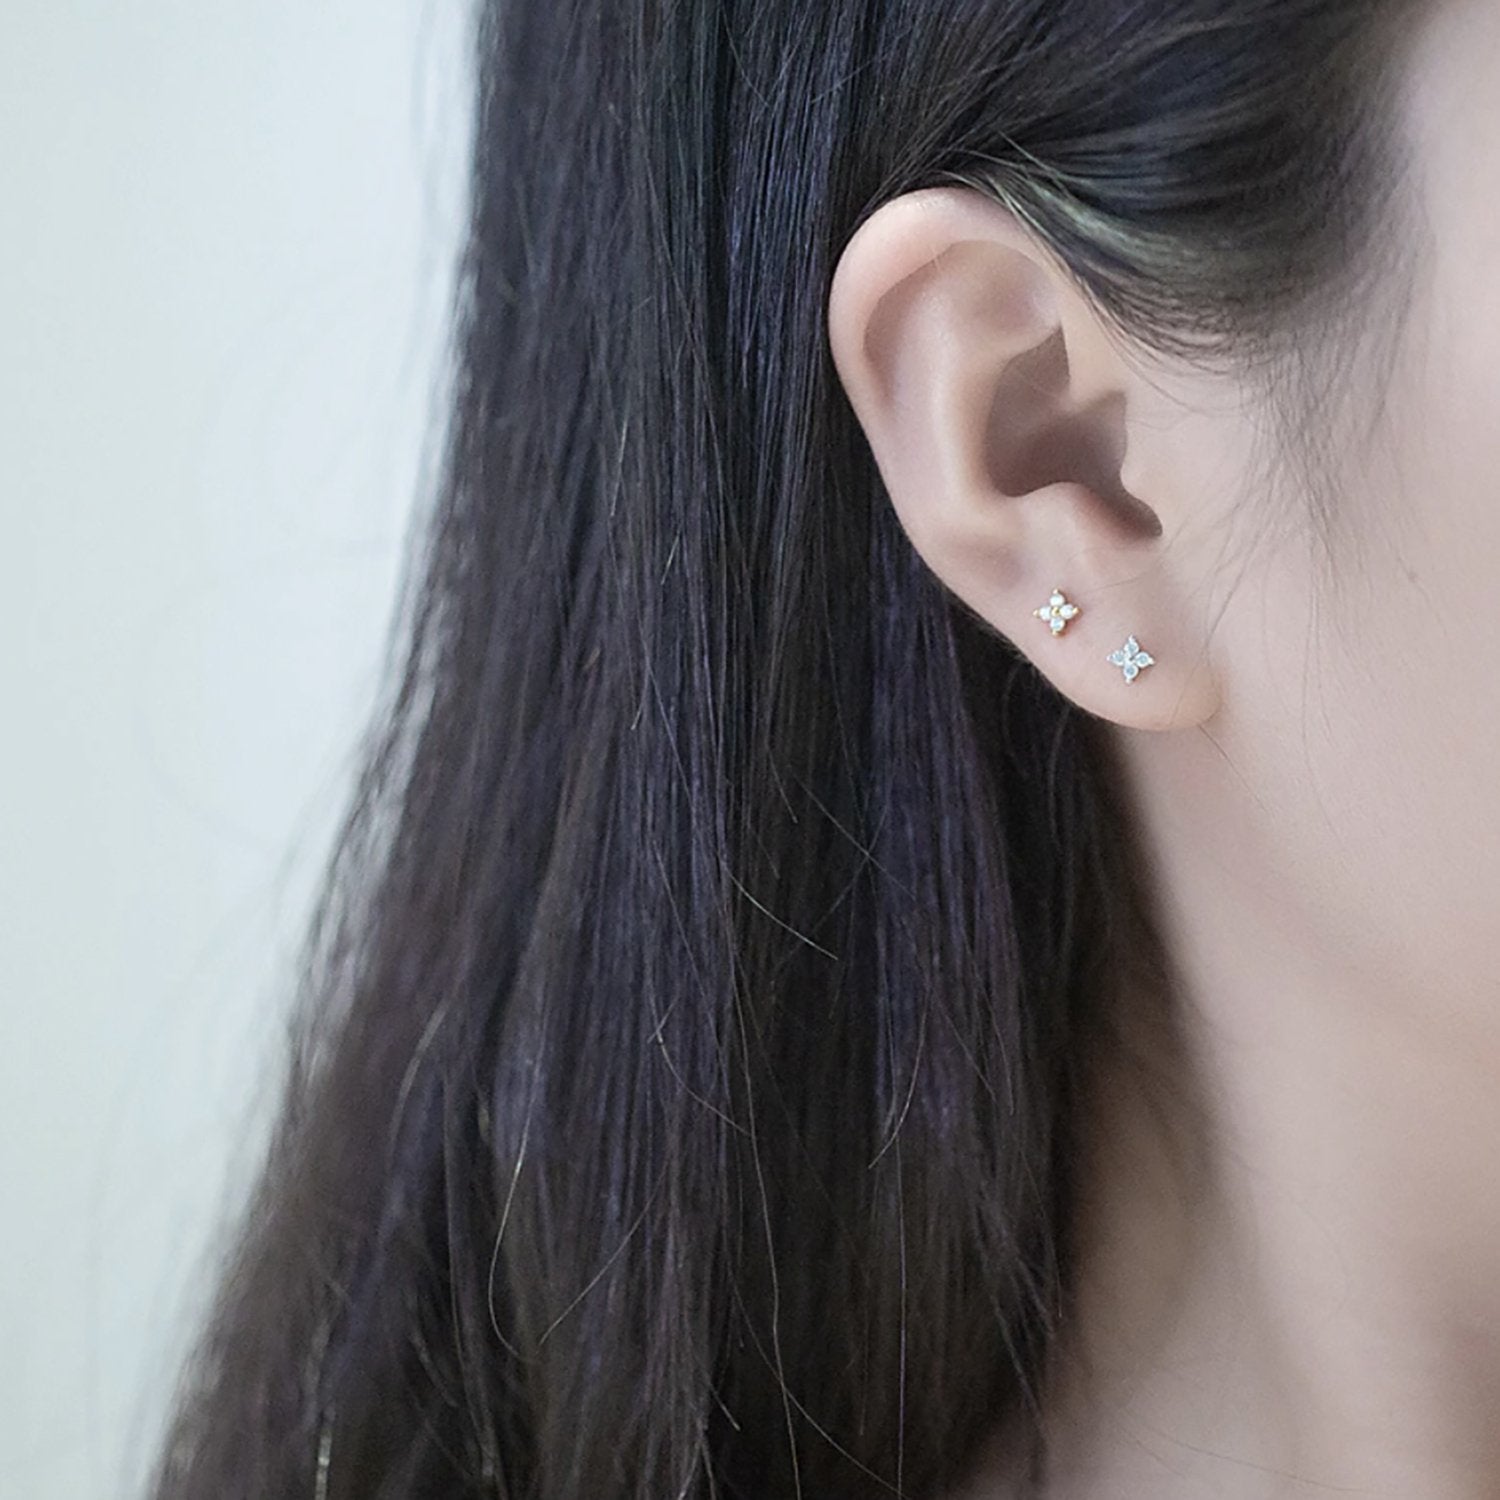 Clover Small Dainty Crystal Flower Ear Piercing Jewelry Earring Studs ...